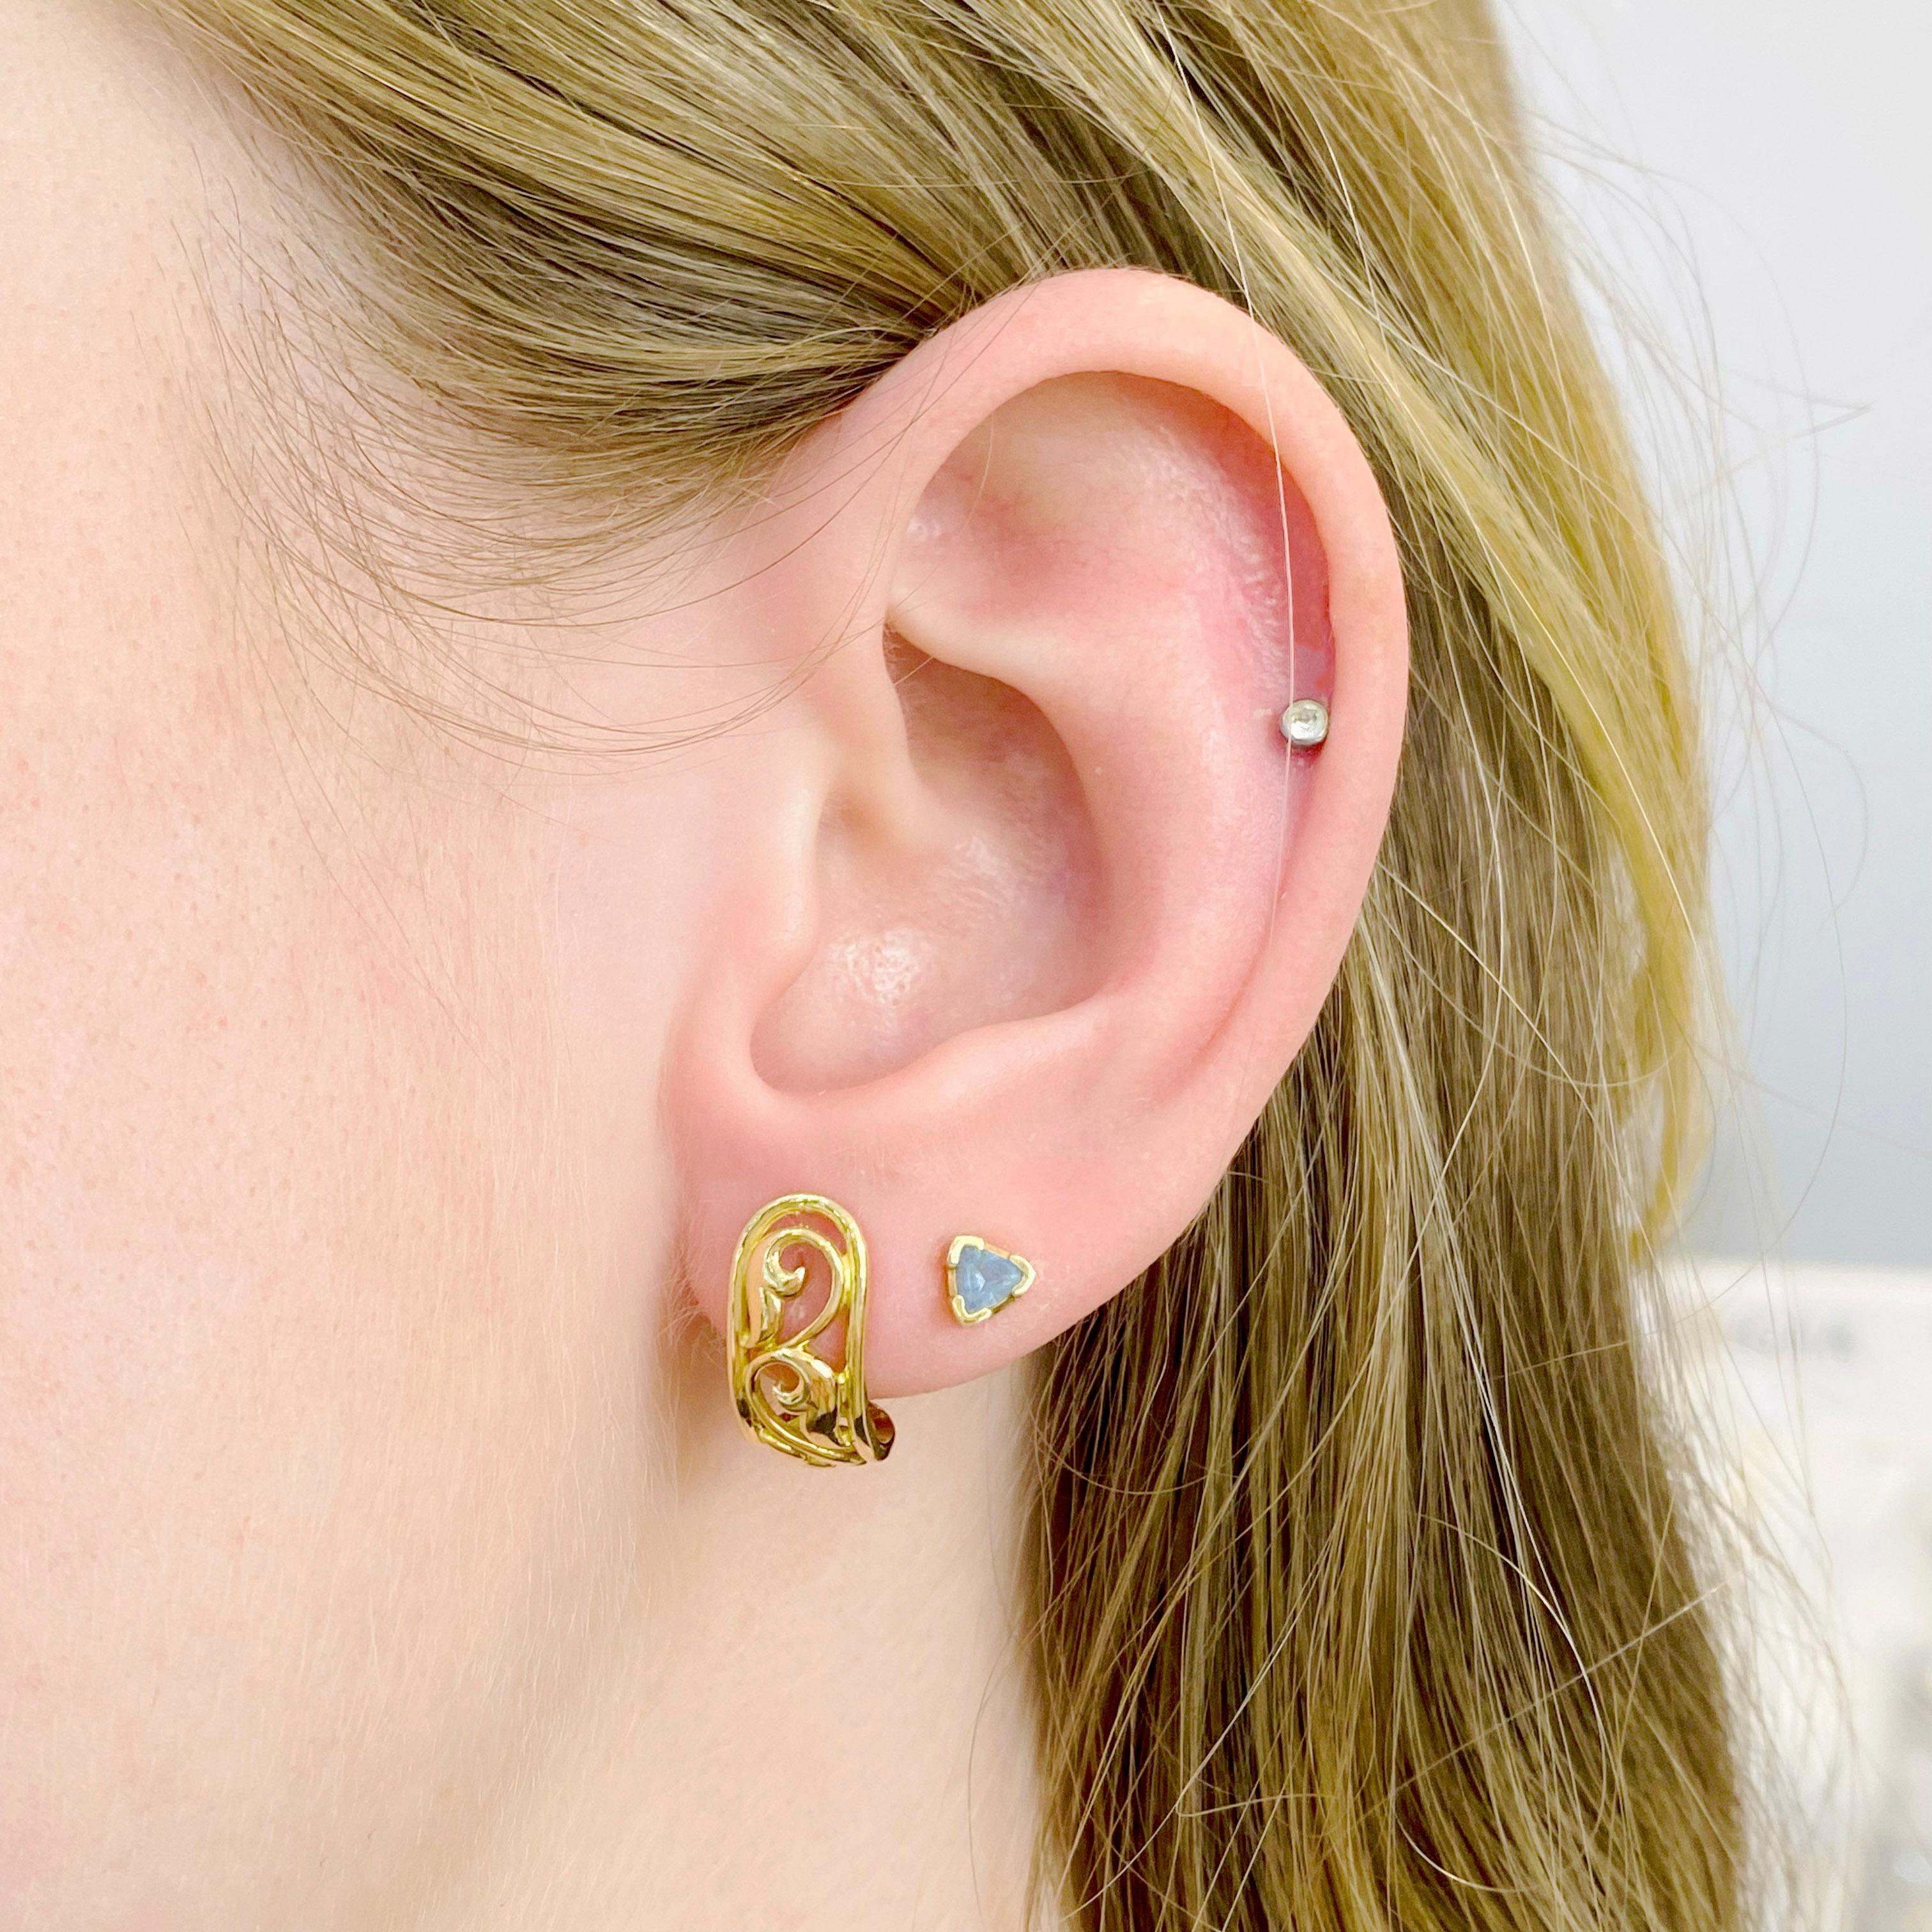 Diese massiven Ohrringe aus 18 Karat Gelbgold sind elegant und stilvoll mit einem zeitlosen Ranken- und Blattmotiv! J-Hoop-Ohrringe bieten das Flair und den Schwung von vollen Reifen, mit einem leichteren Gefühl für Ihren Look. Zeigen Sie Ihren